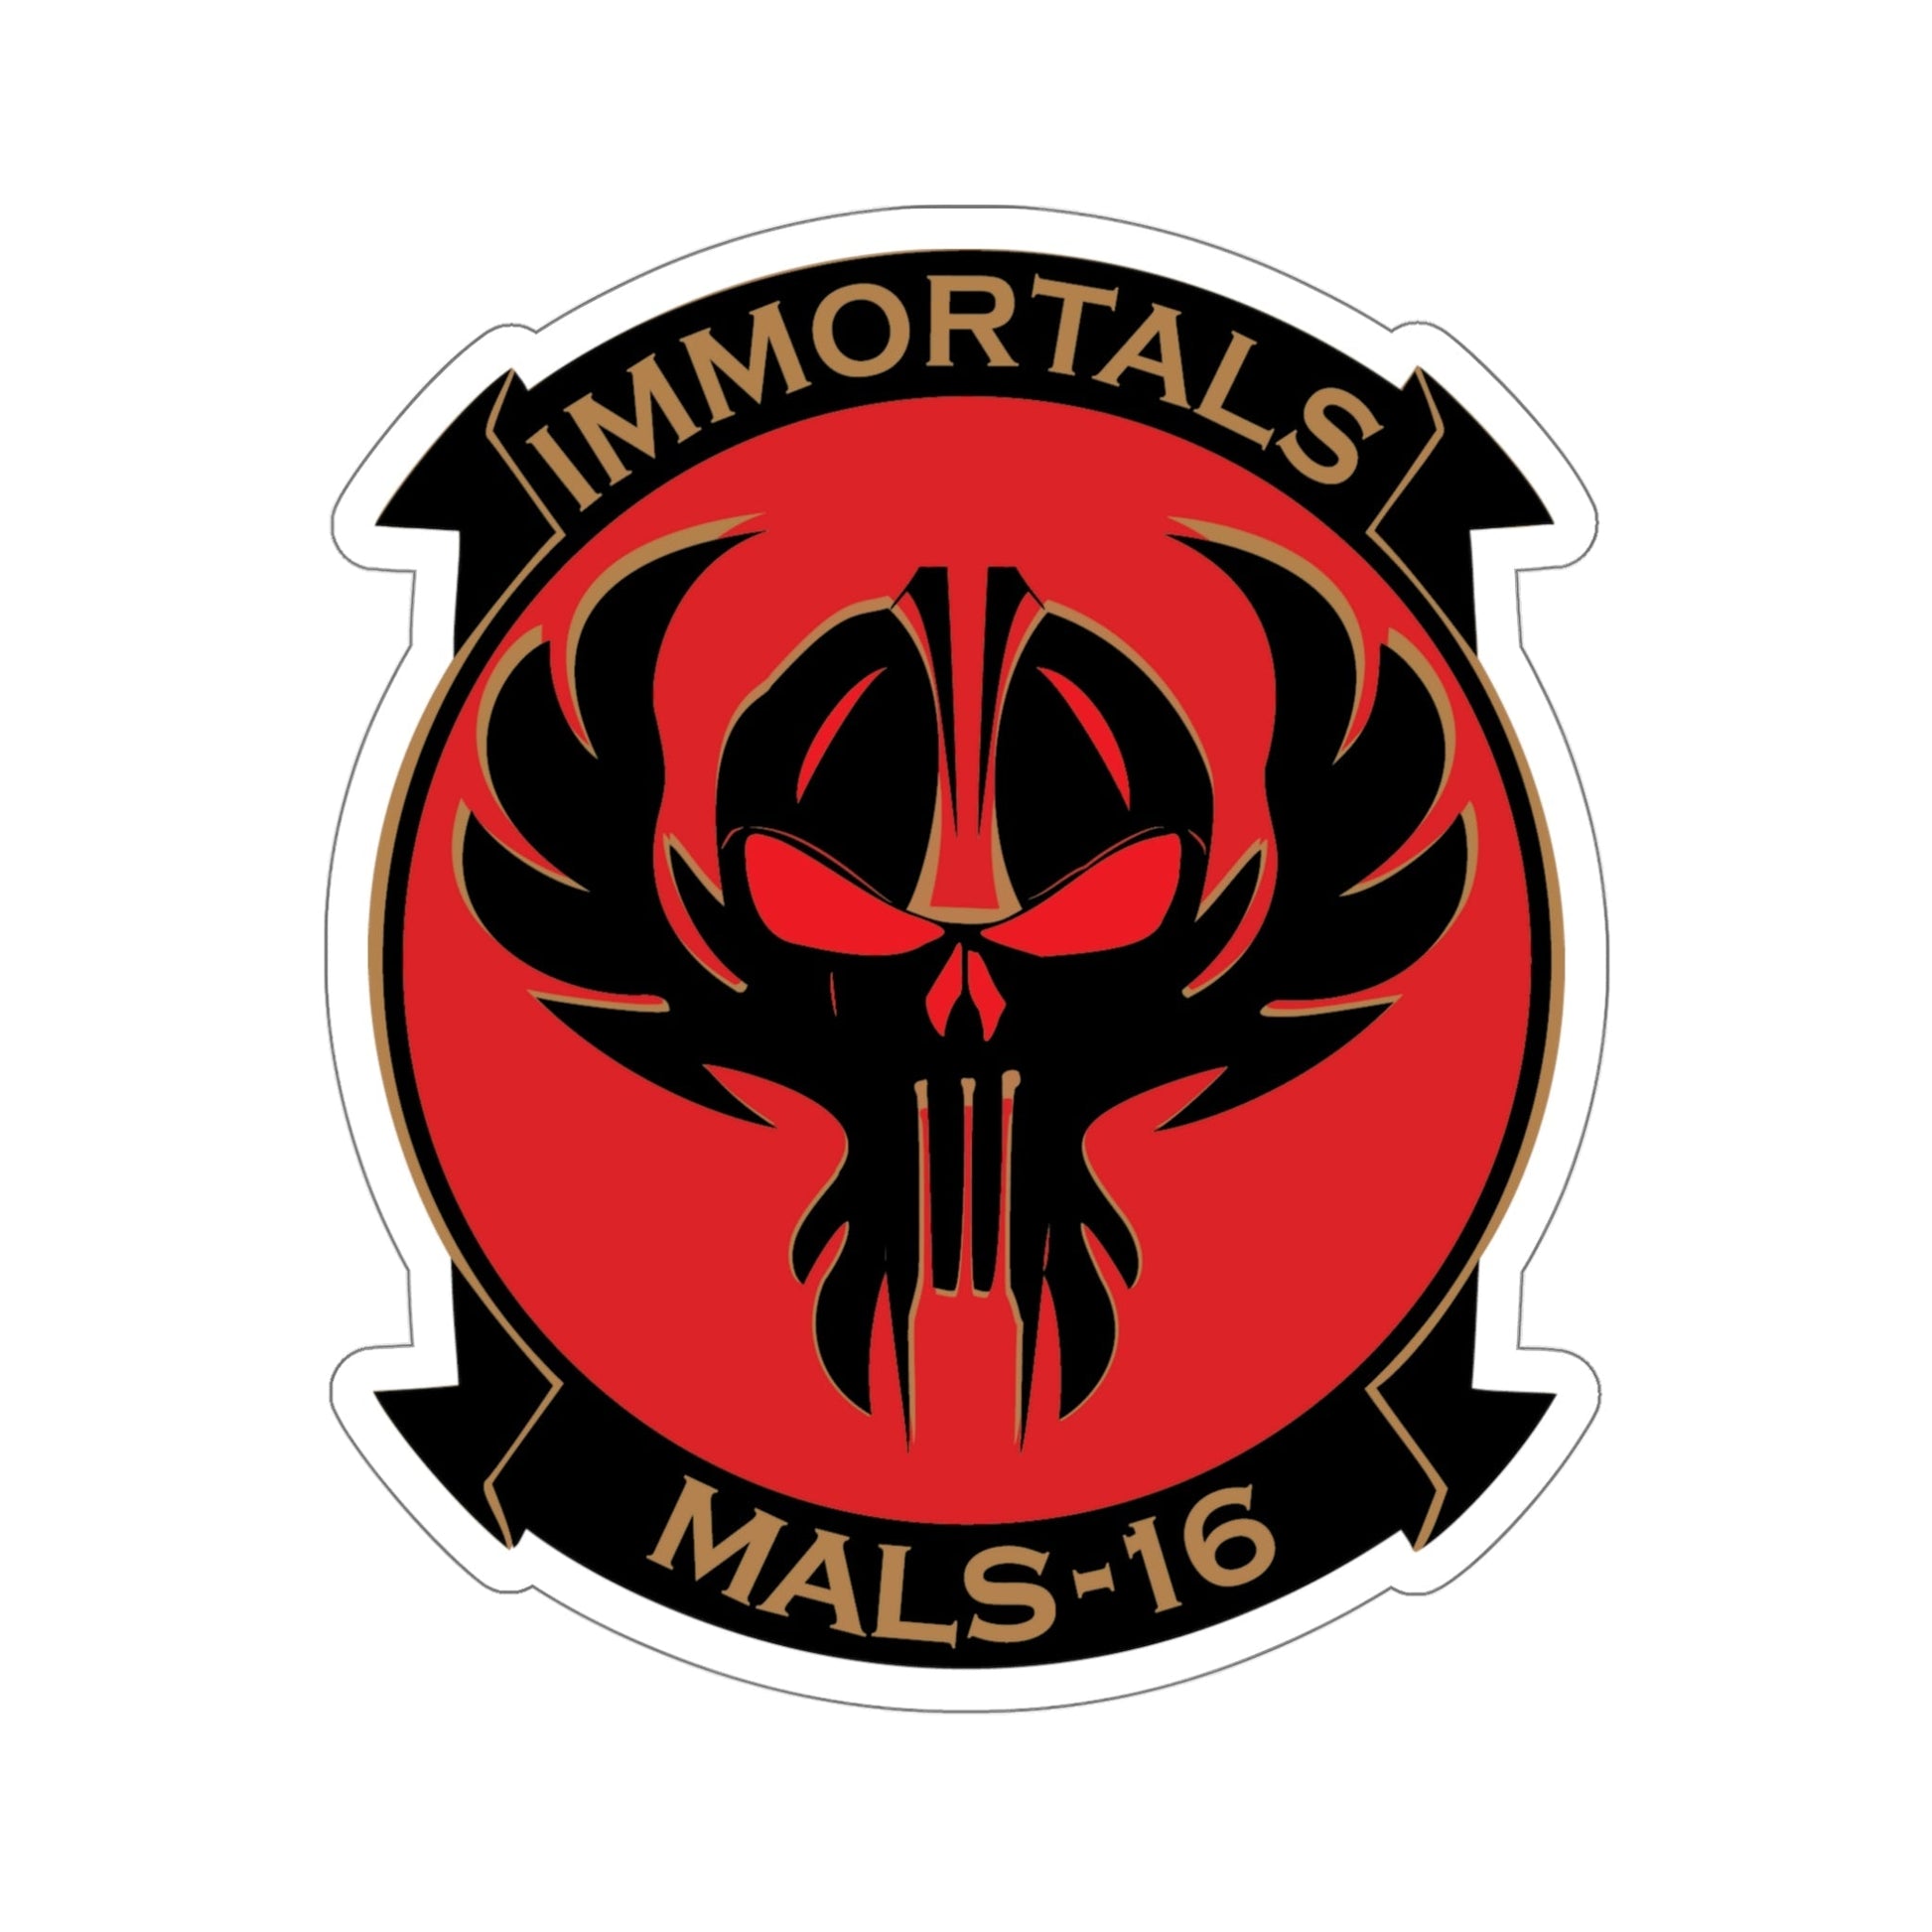 MALS 16 Immortals (USMC) STICKER Vinyl Die-Cut Decal-5 Inch-The Sticker Space